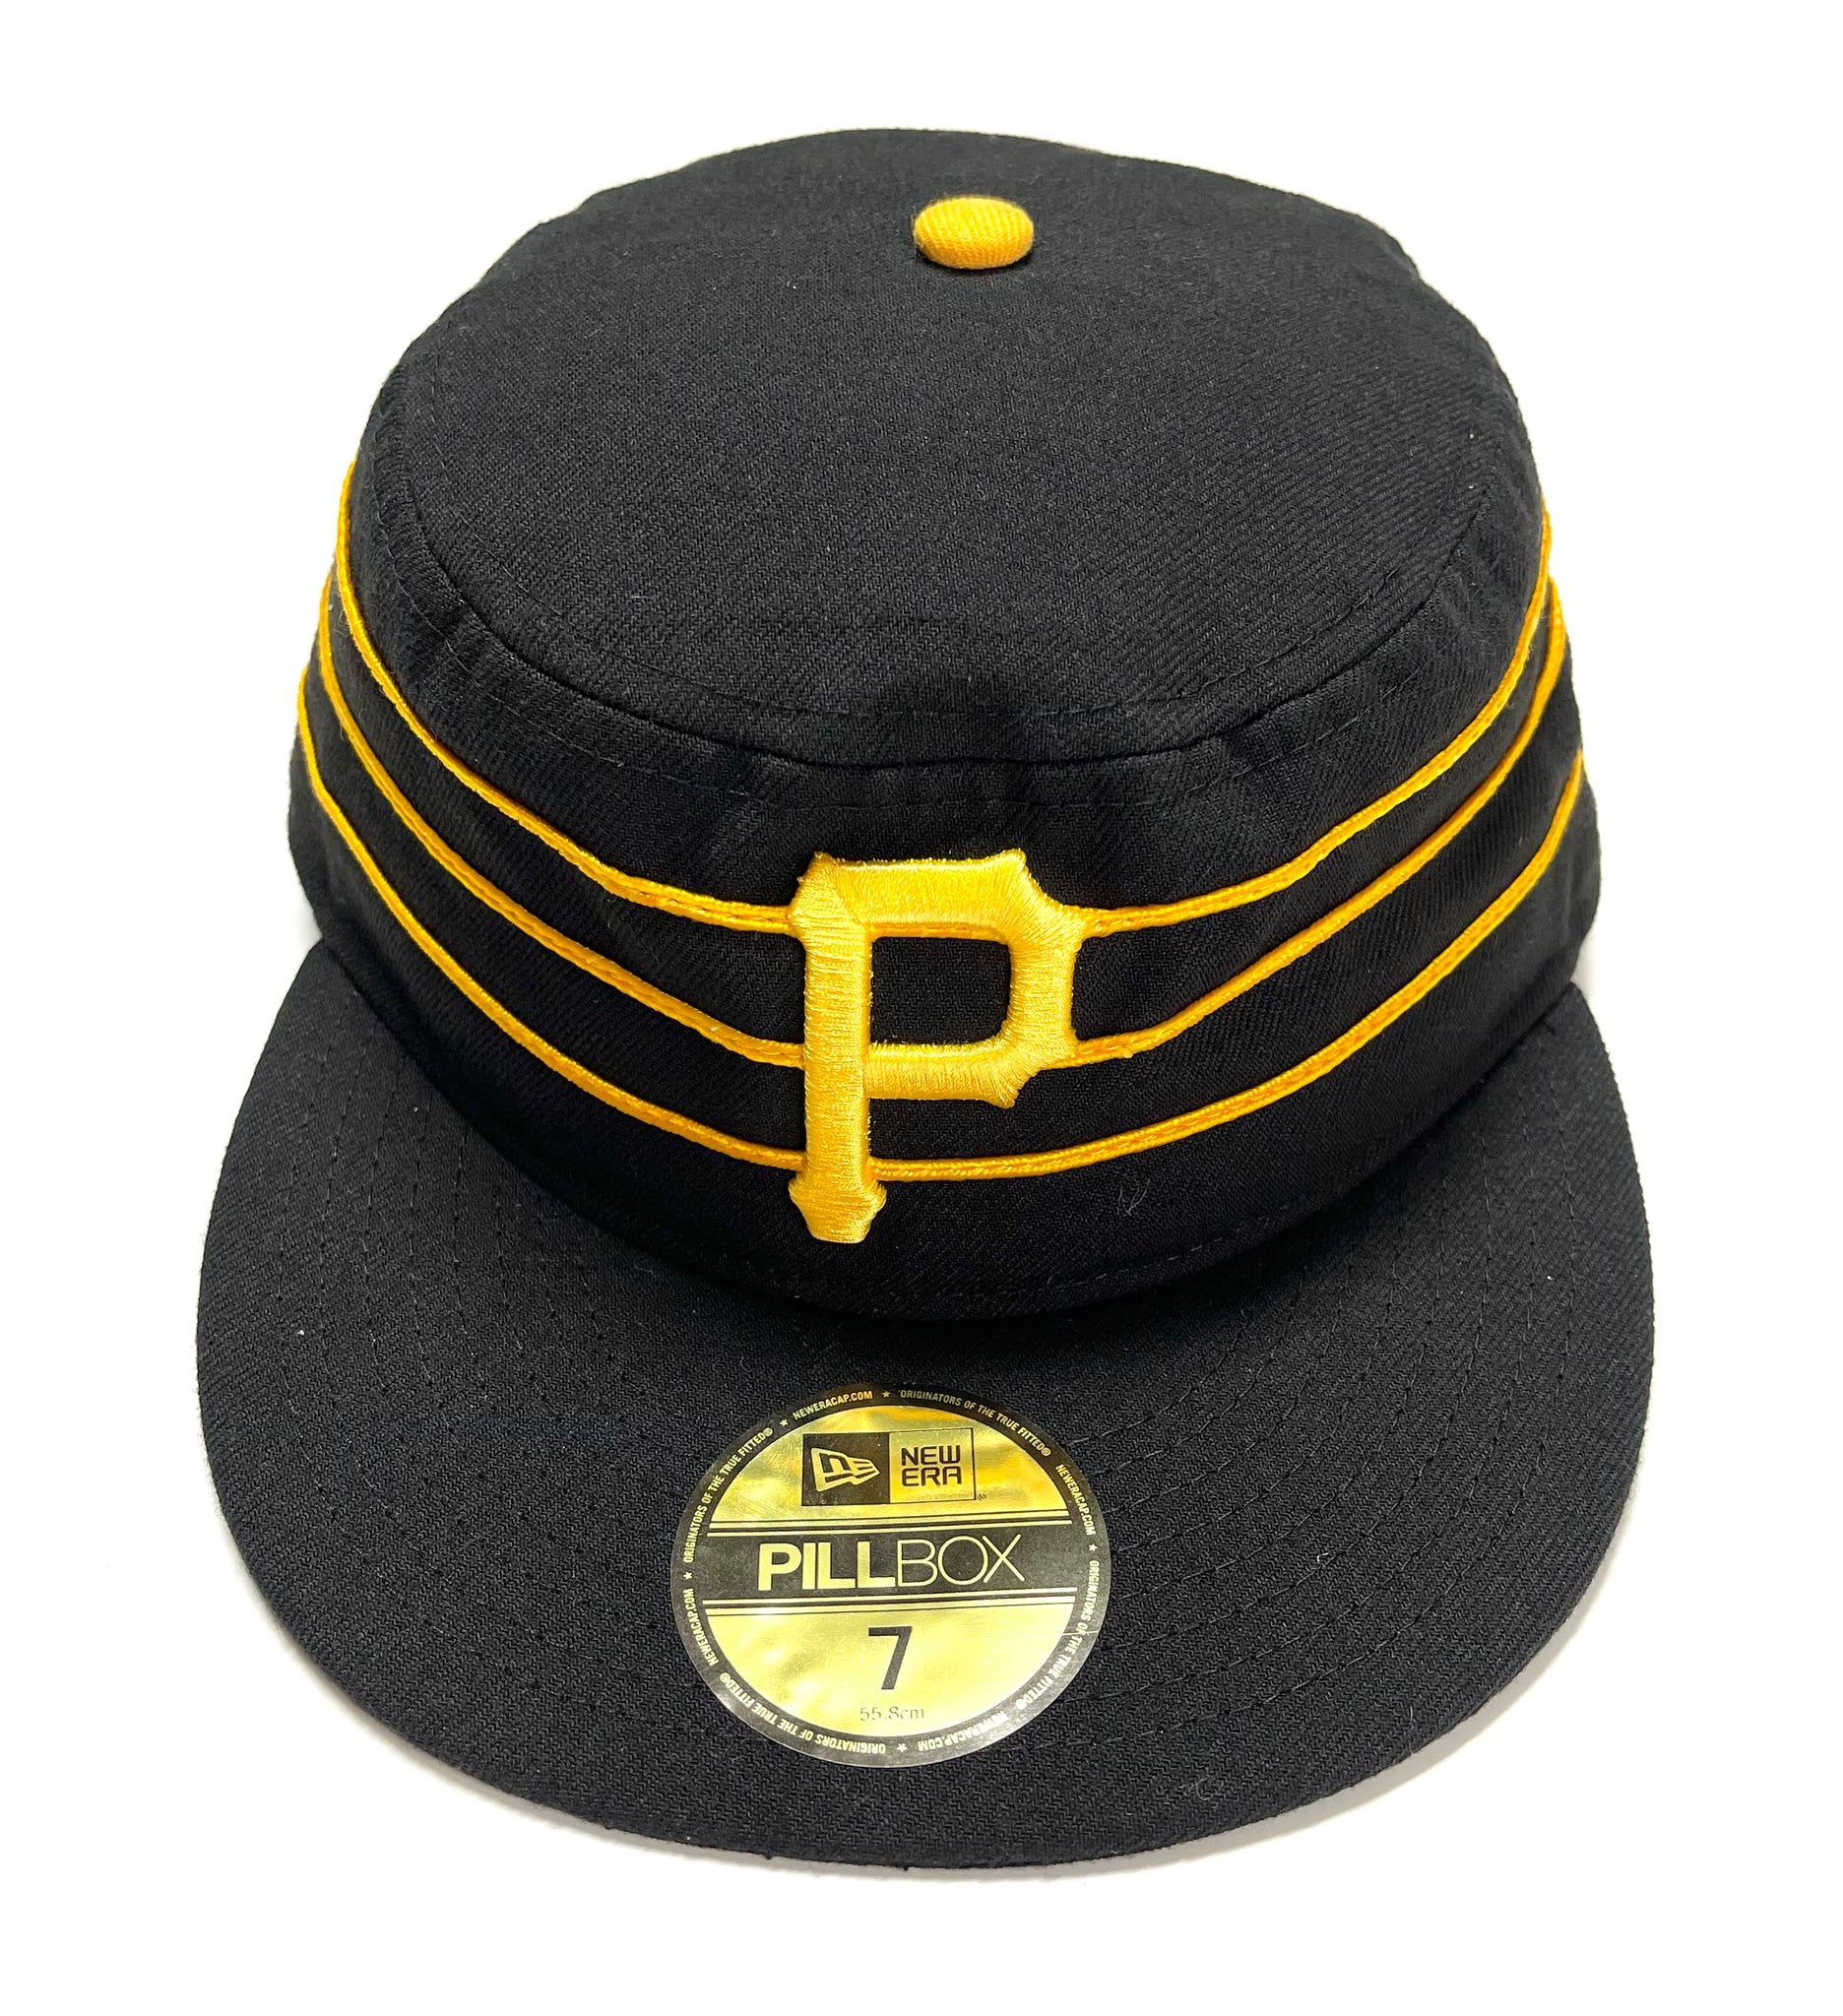 Pittsburgh Pirates Pillbox 2017